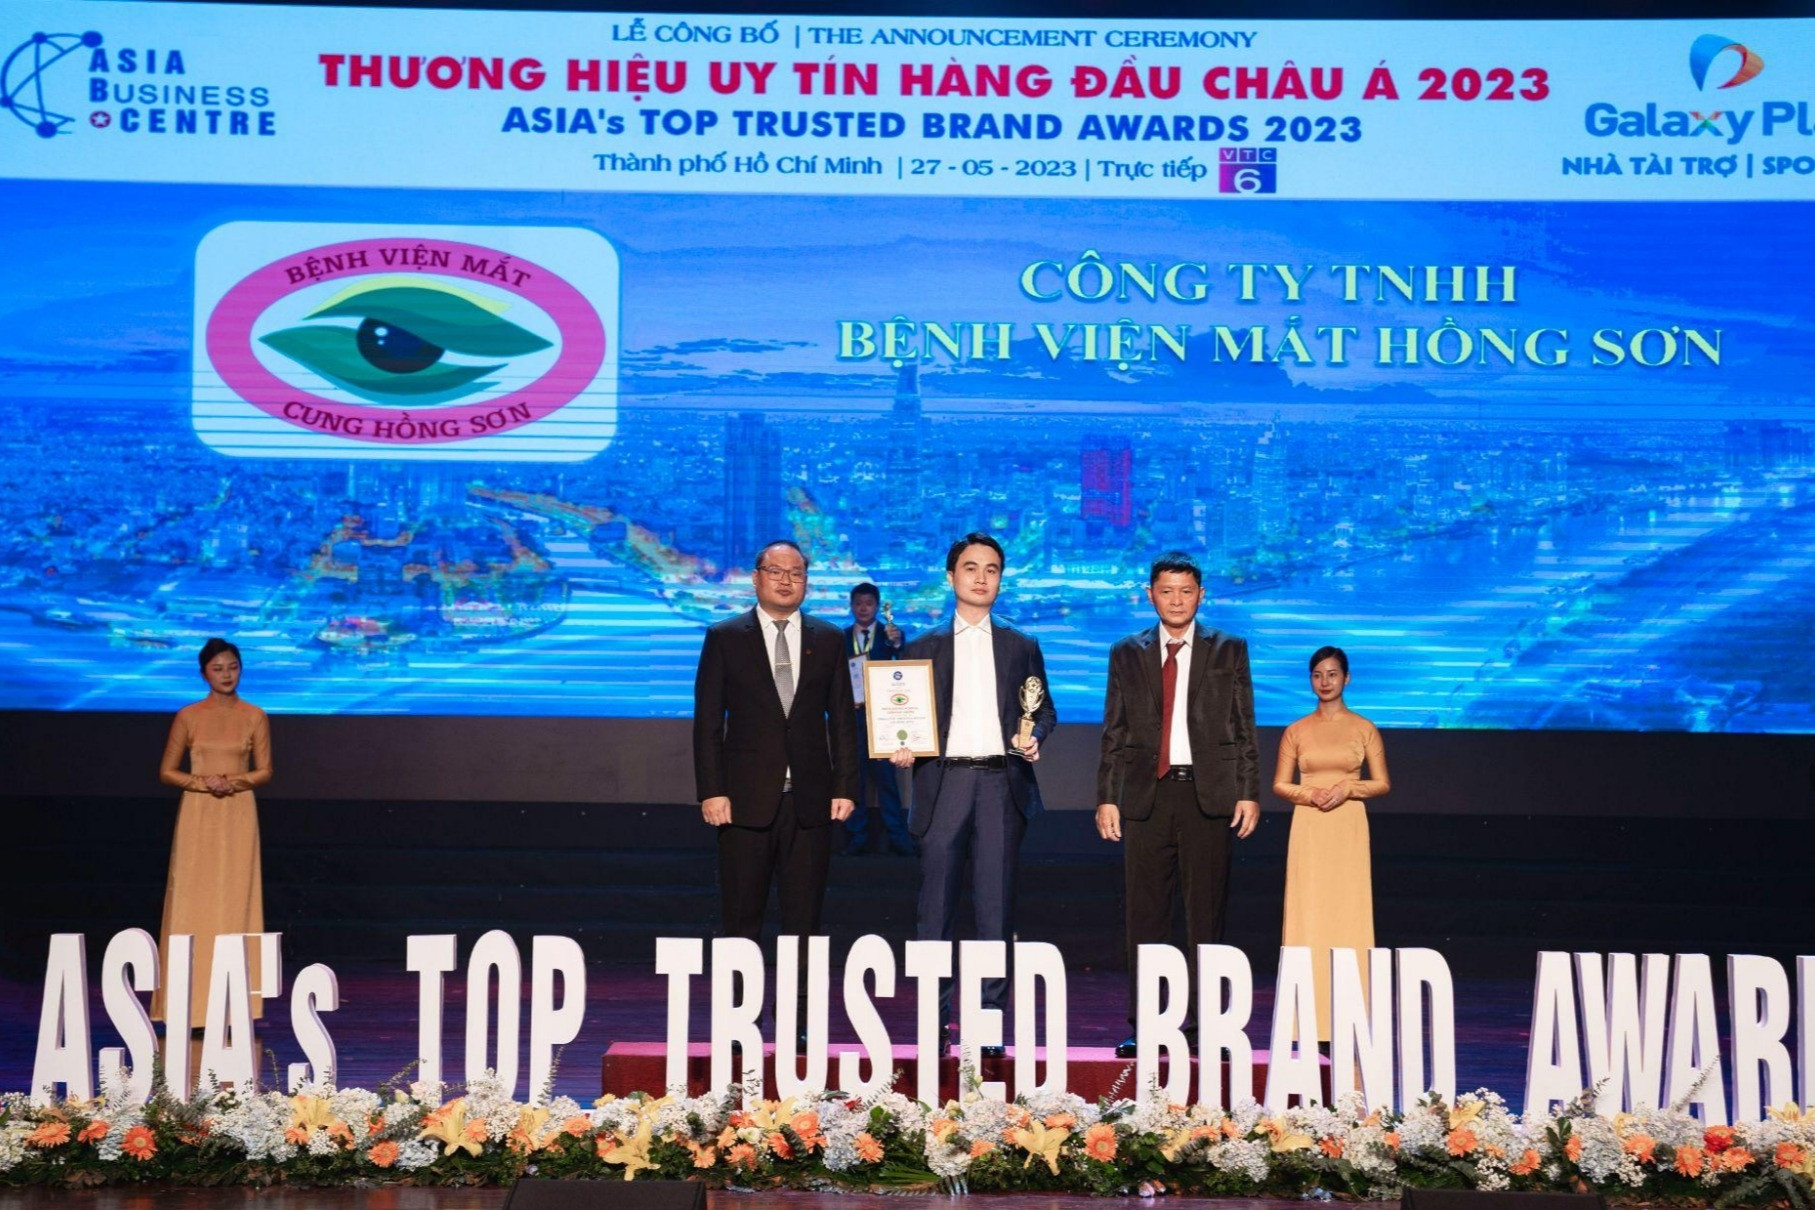 Bệnh viện Mắt Hồng Sơn nhận giải thưởng Thương hiệu uy tín hàng đầu châu Á 2023